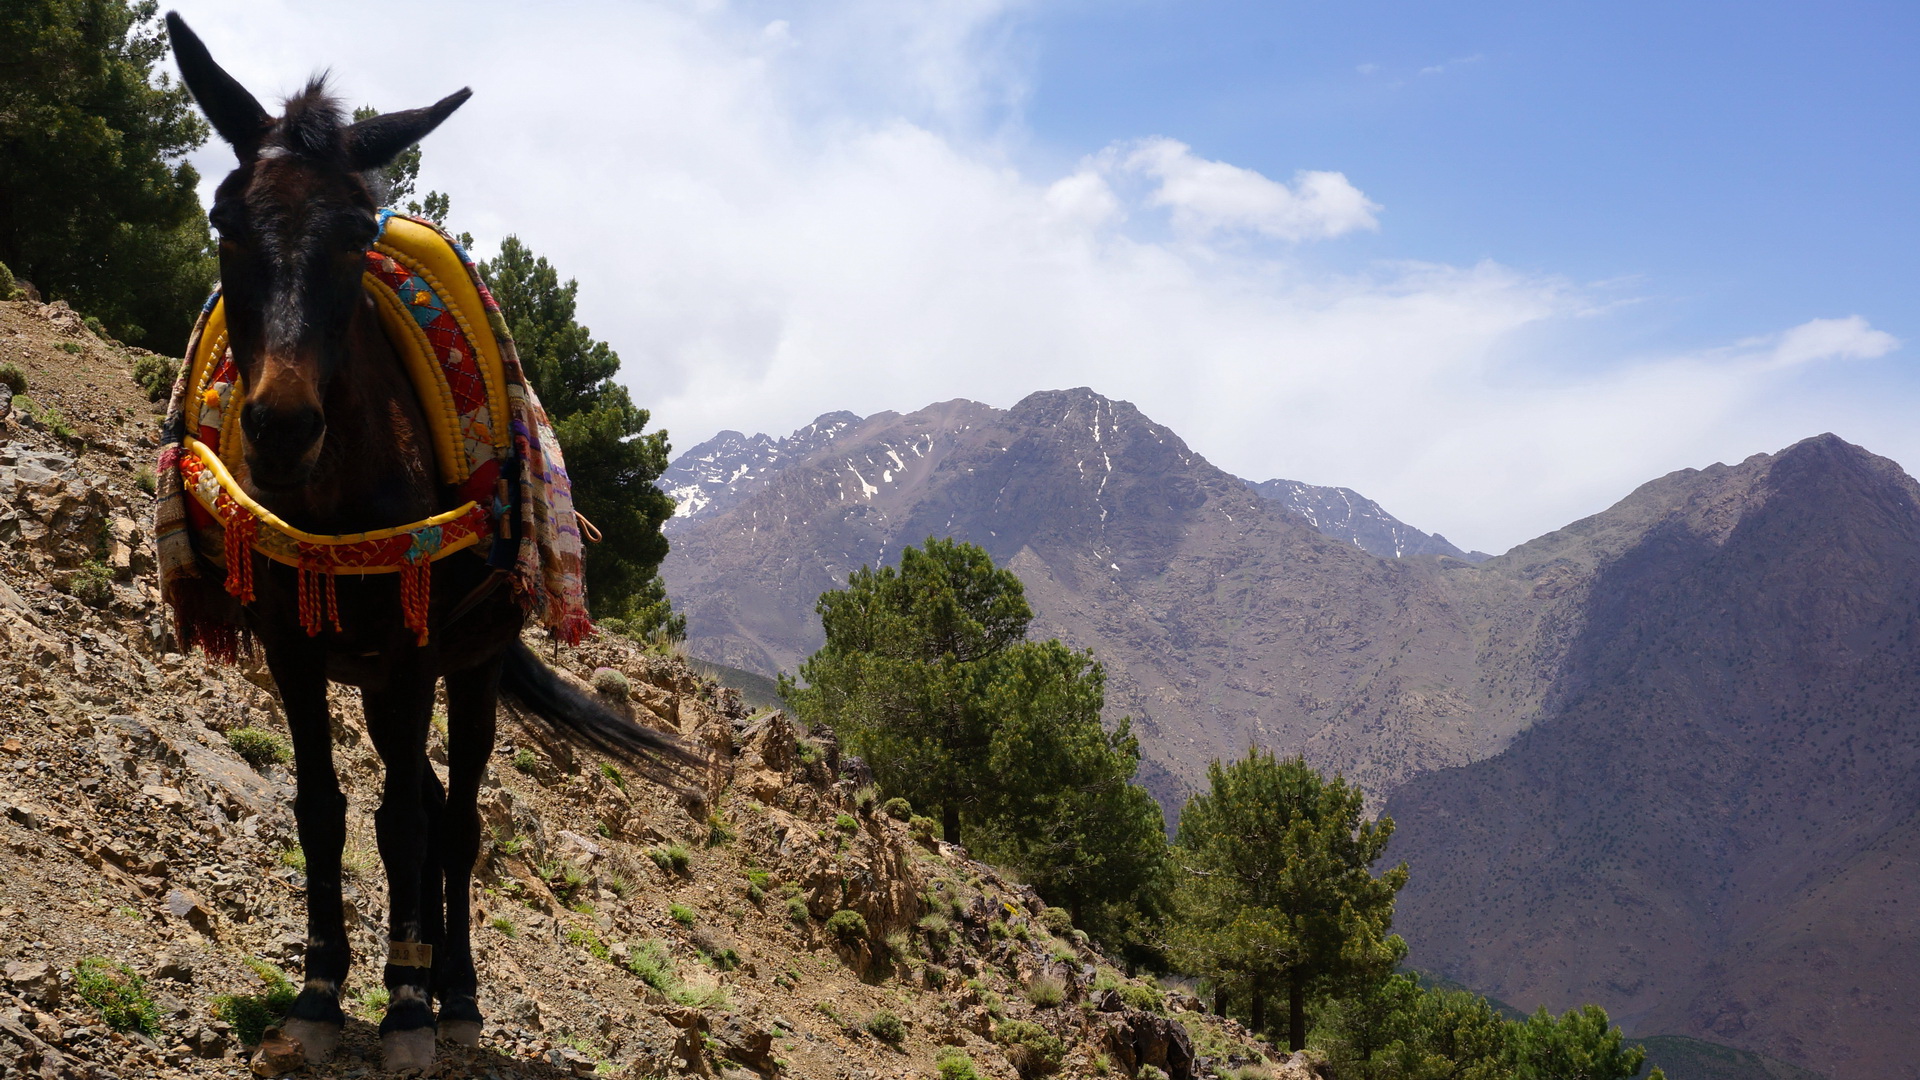 pathfinders treks - berber villages and valleys